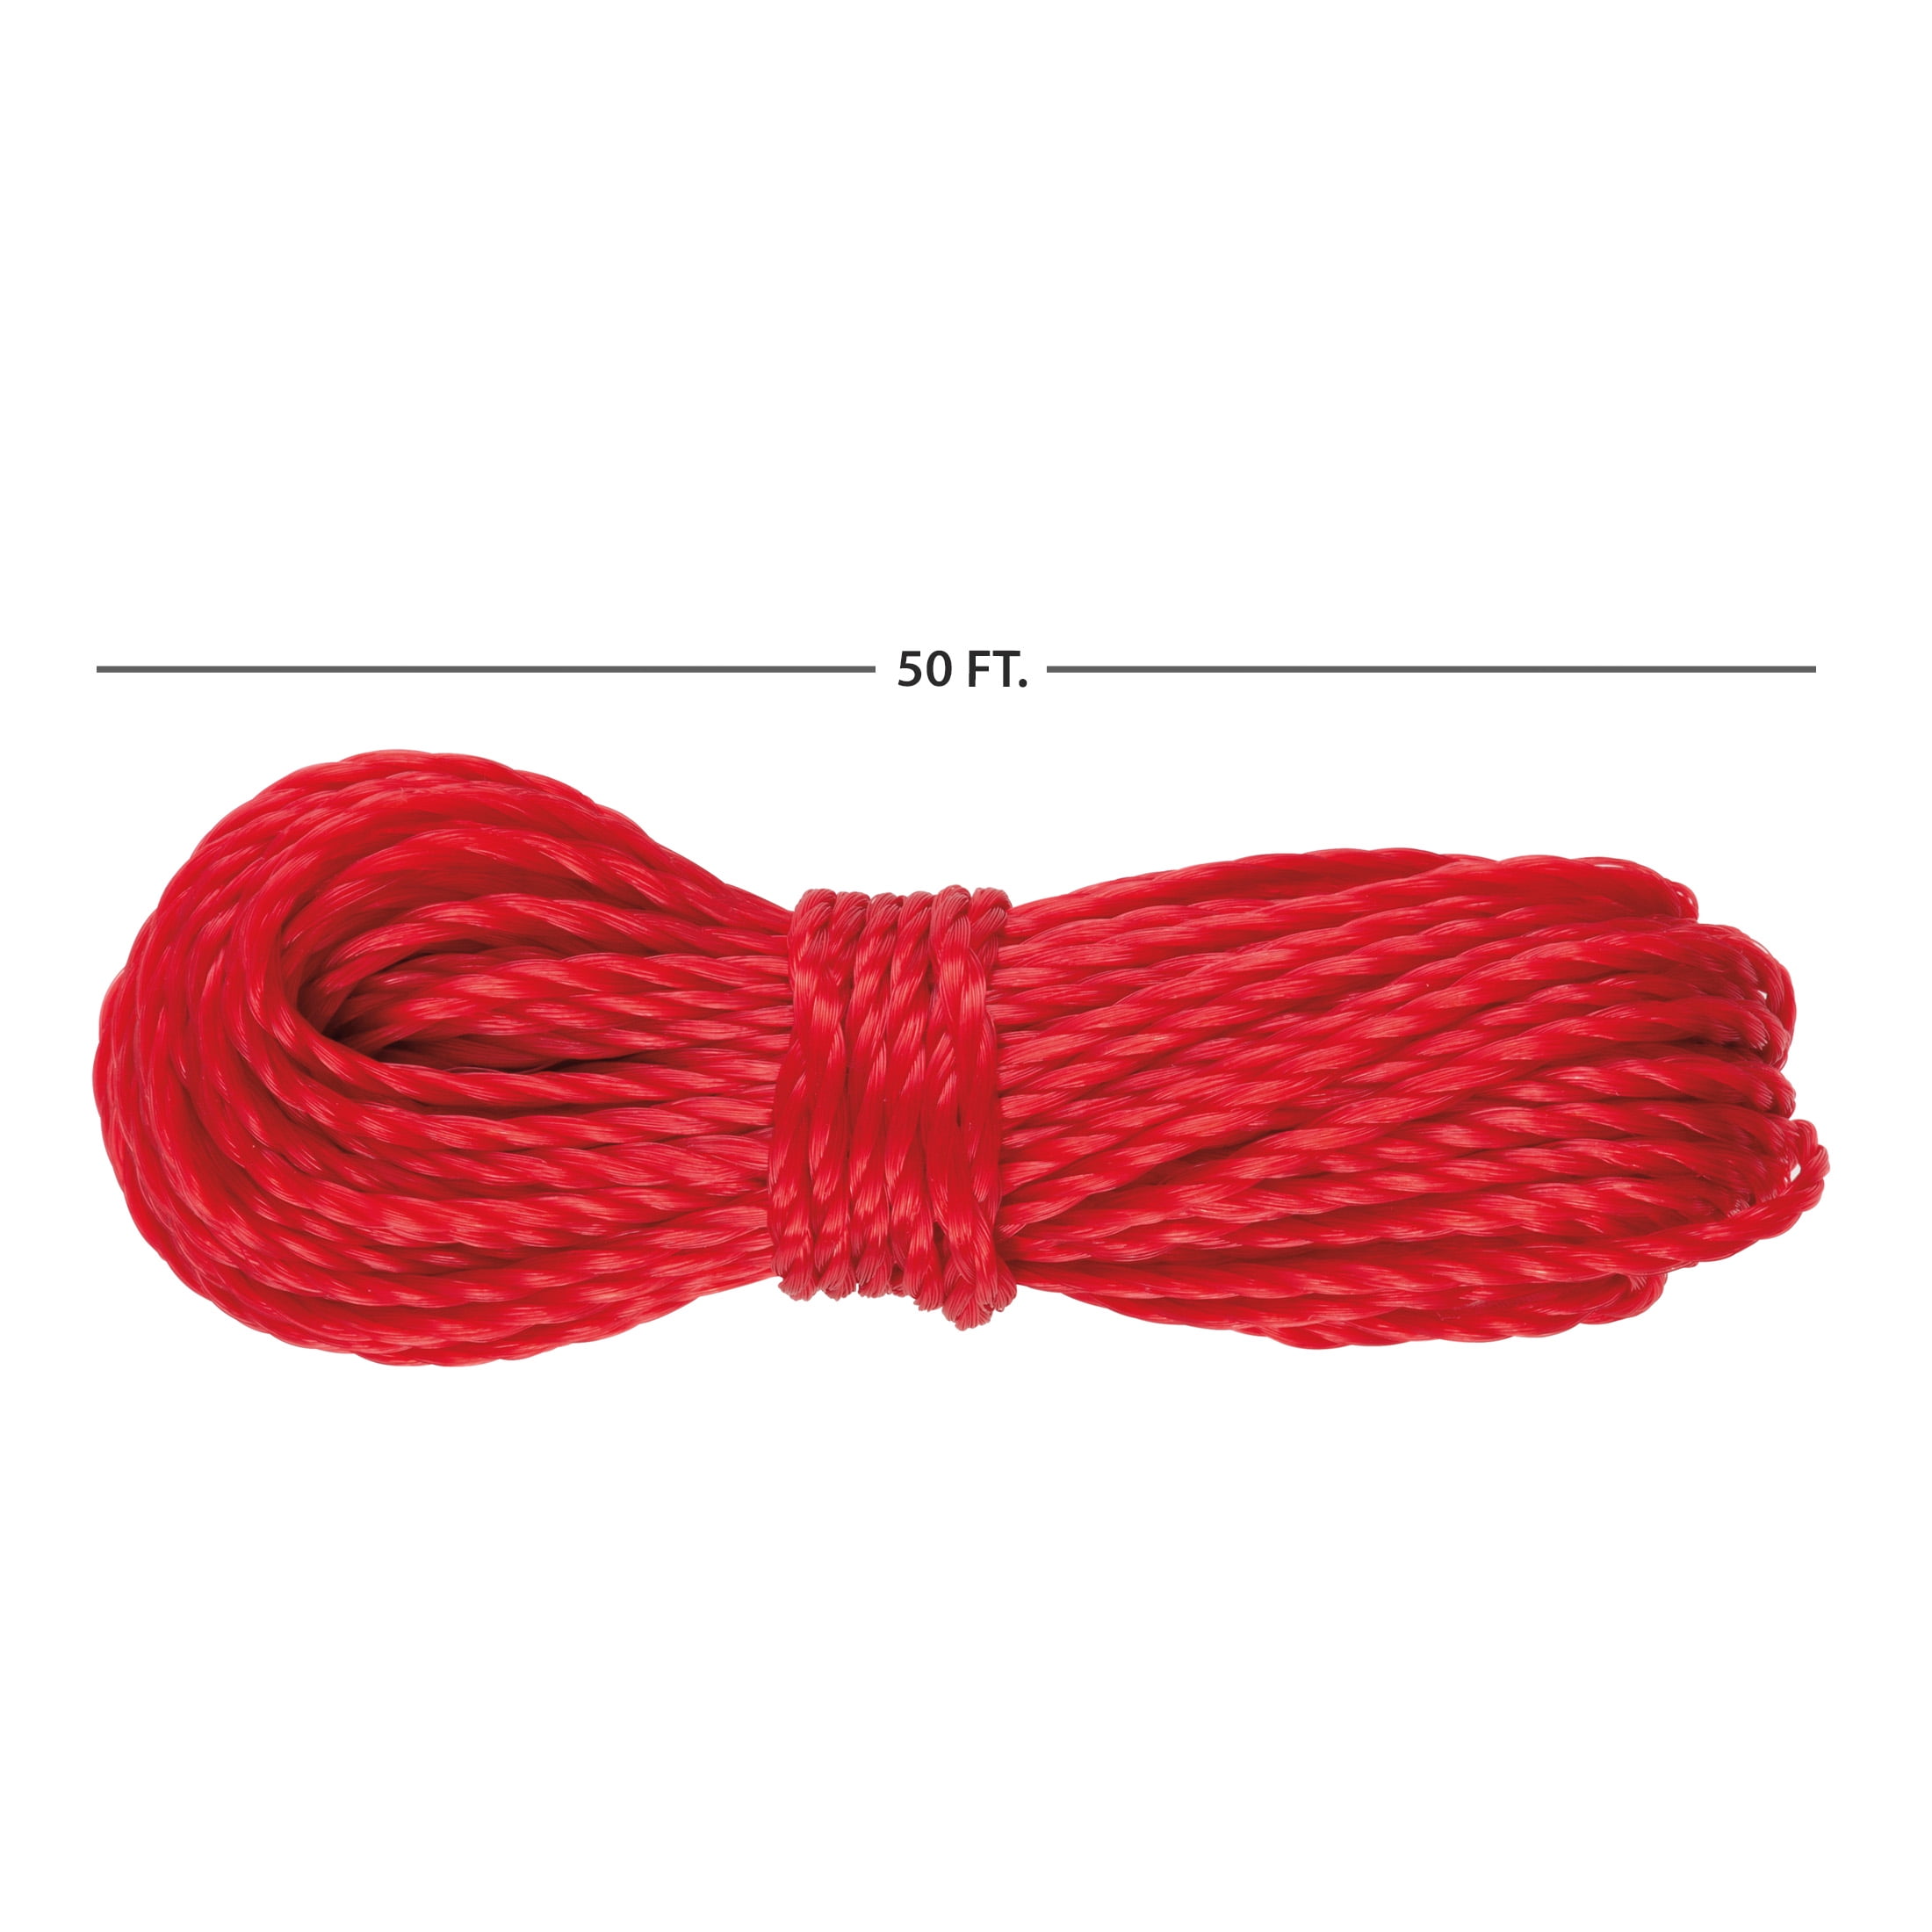 Red Birthday Pinata Rope, 50ft